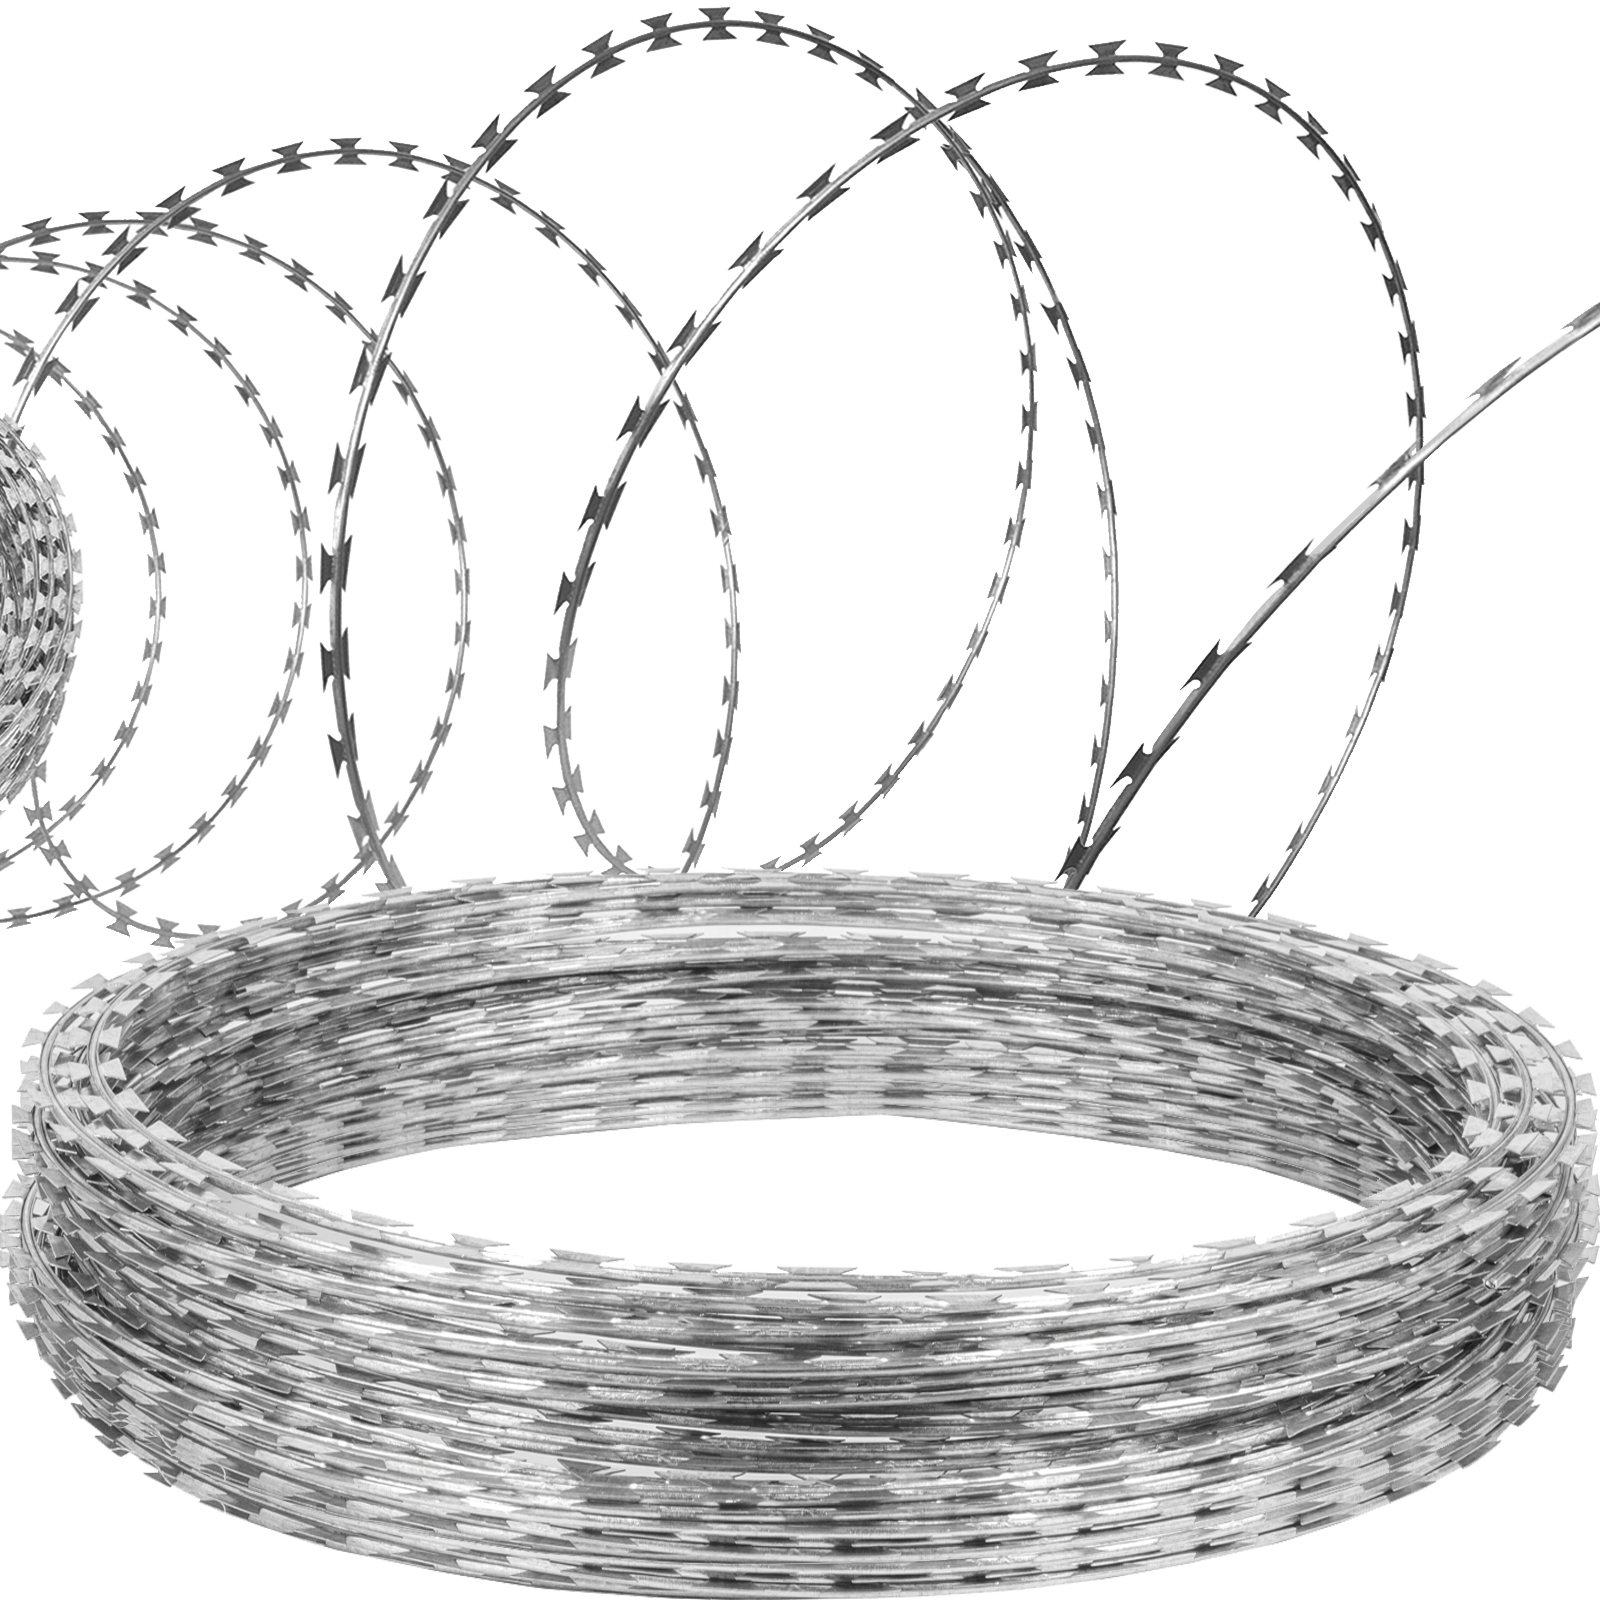 Razor Barbed Tape Wire, Concertina Razor Wire